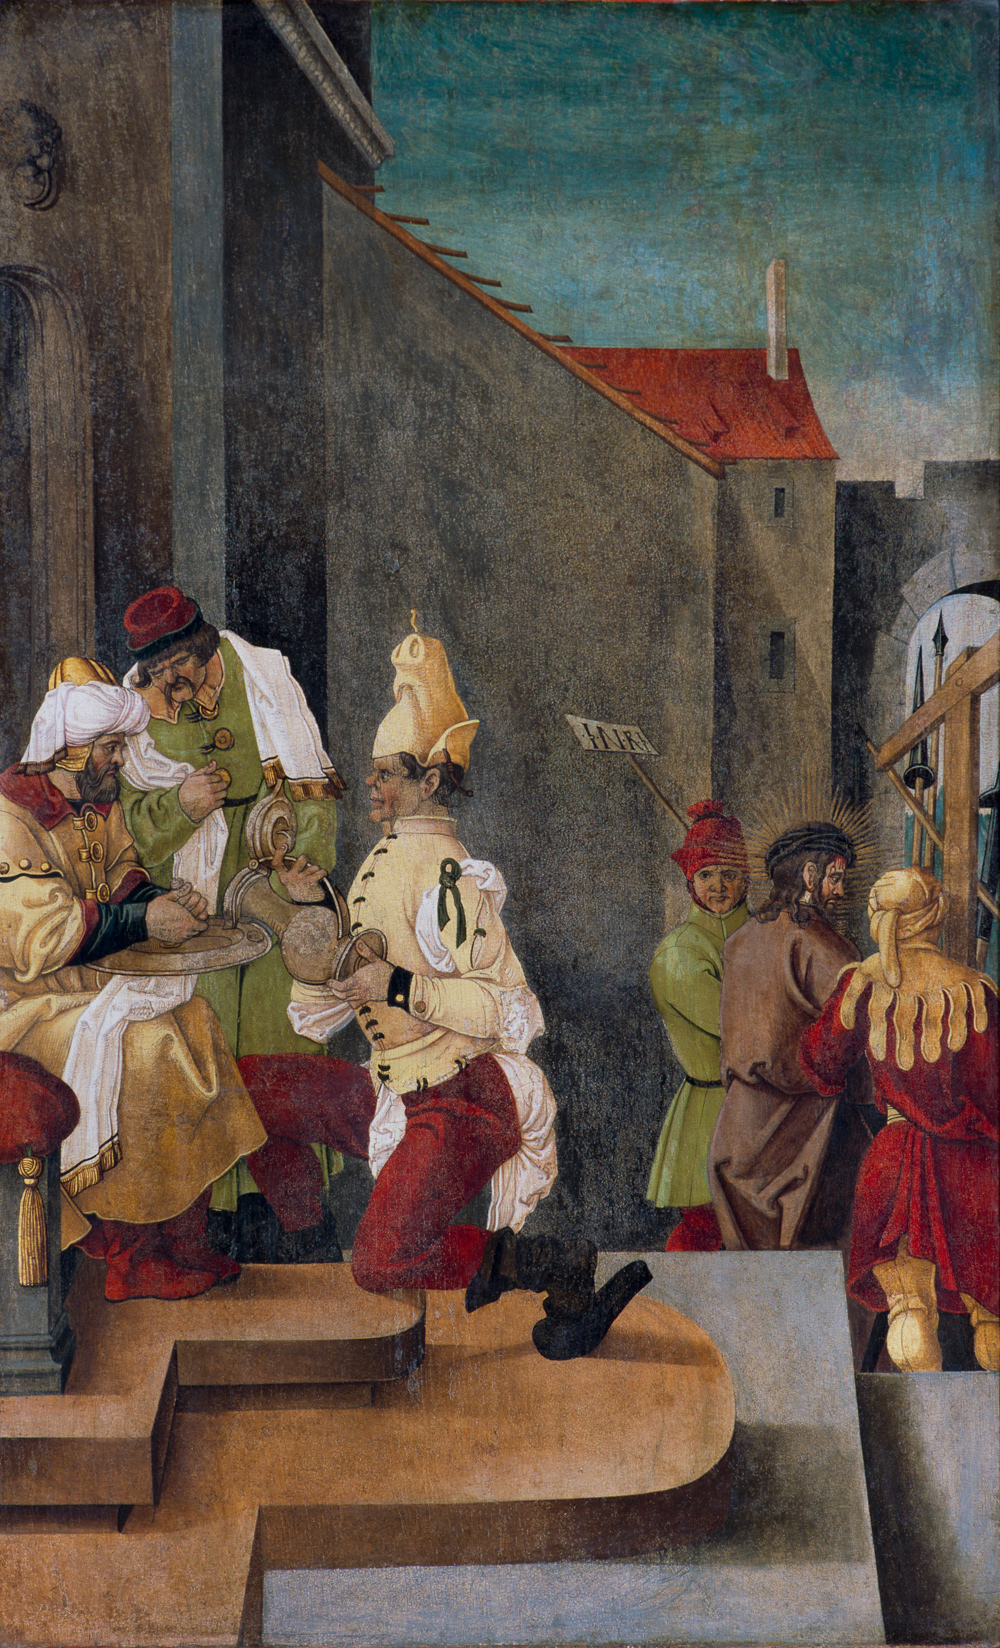 Handwaschung des Pilatus, Teil eines Flügelretabels, Tafelmalerei, evang. Kirche in Sibiu, Rumänien, 1. Hälfte 16. Jh.?